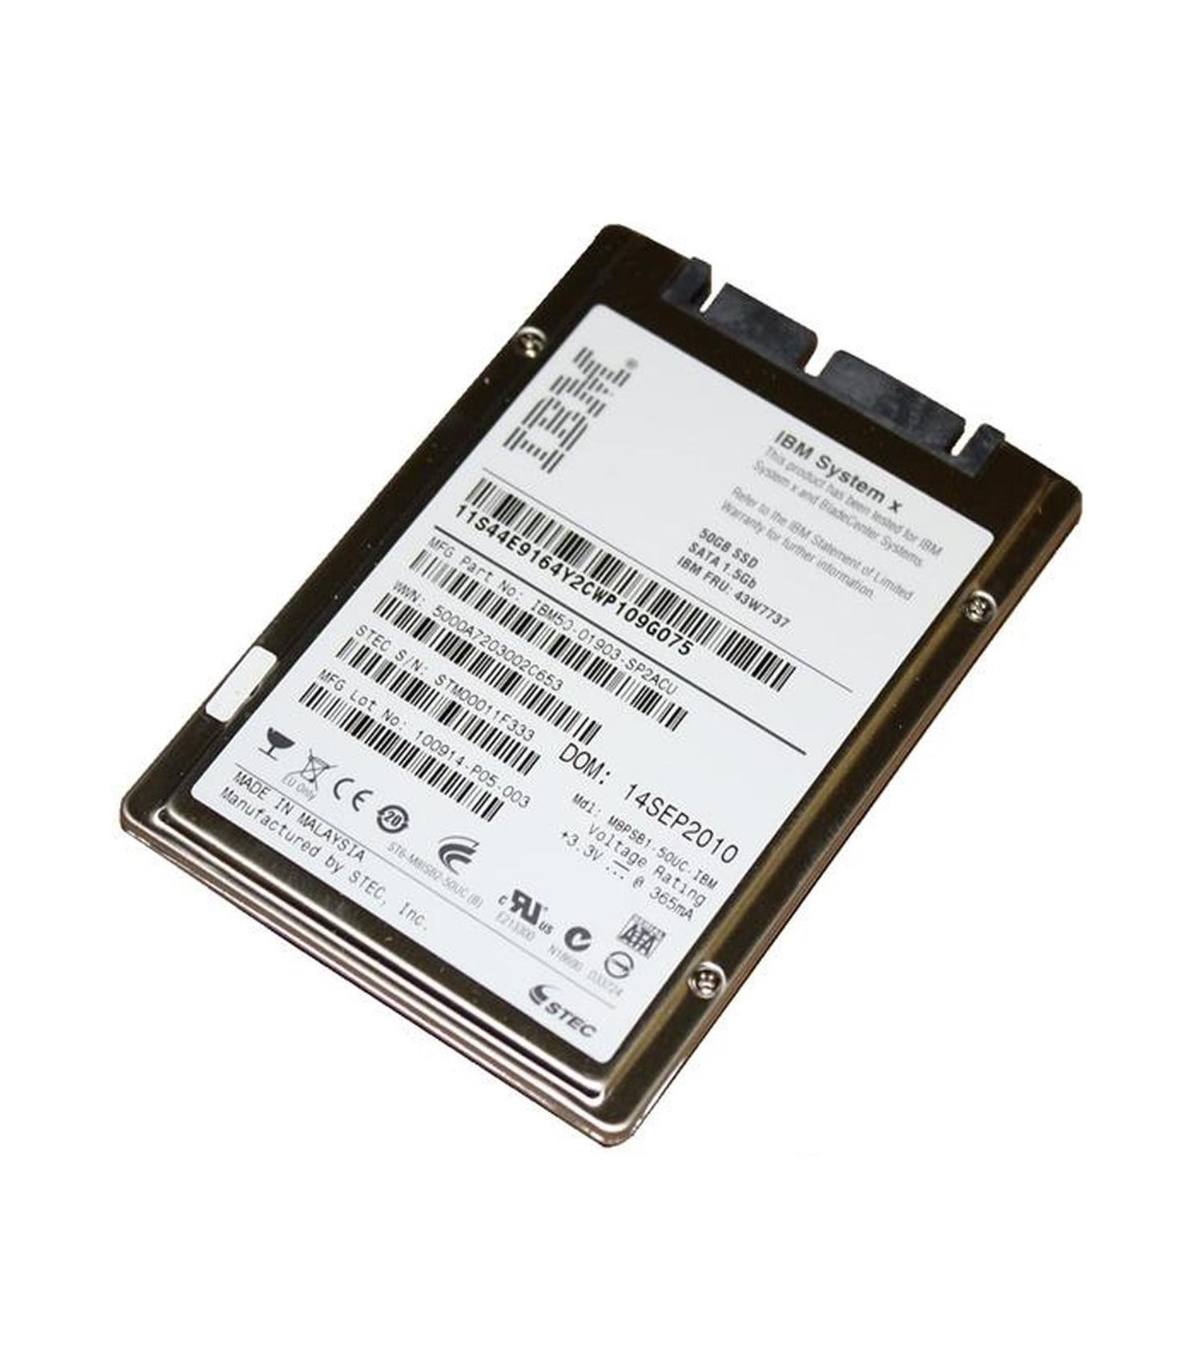 IBM 50GB SSD SATA 1,8” 43W7737 IBM50-01903-SP2ACU